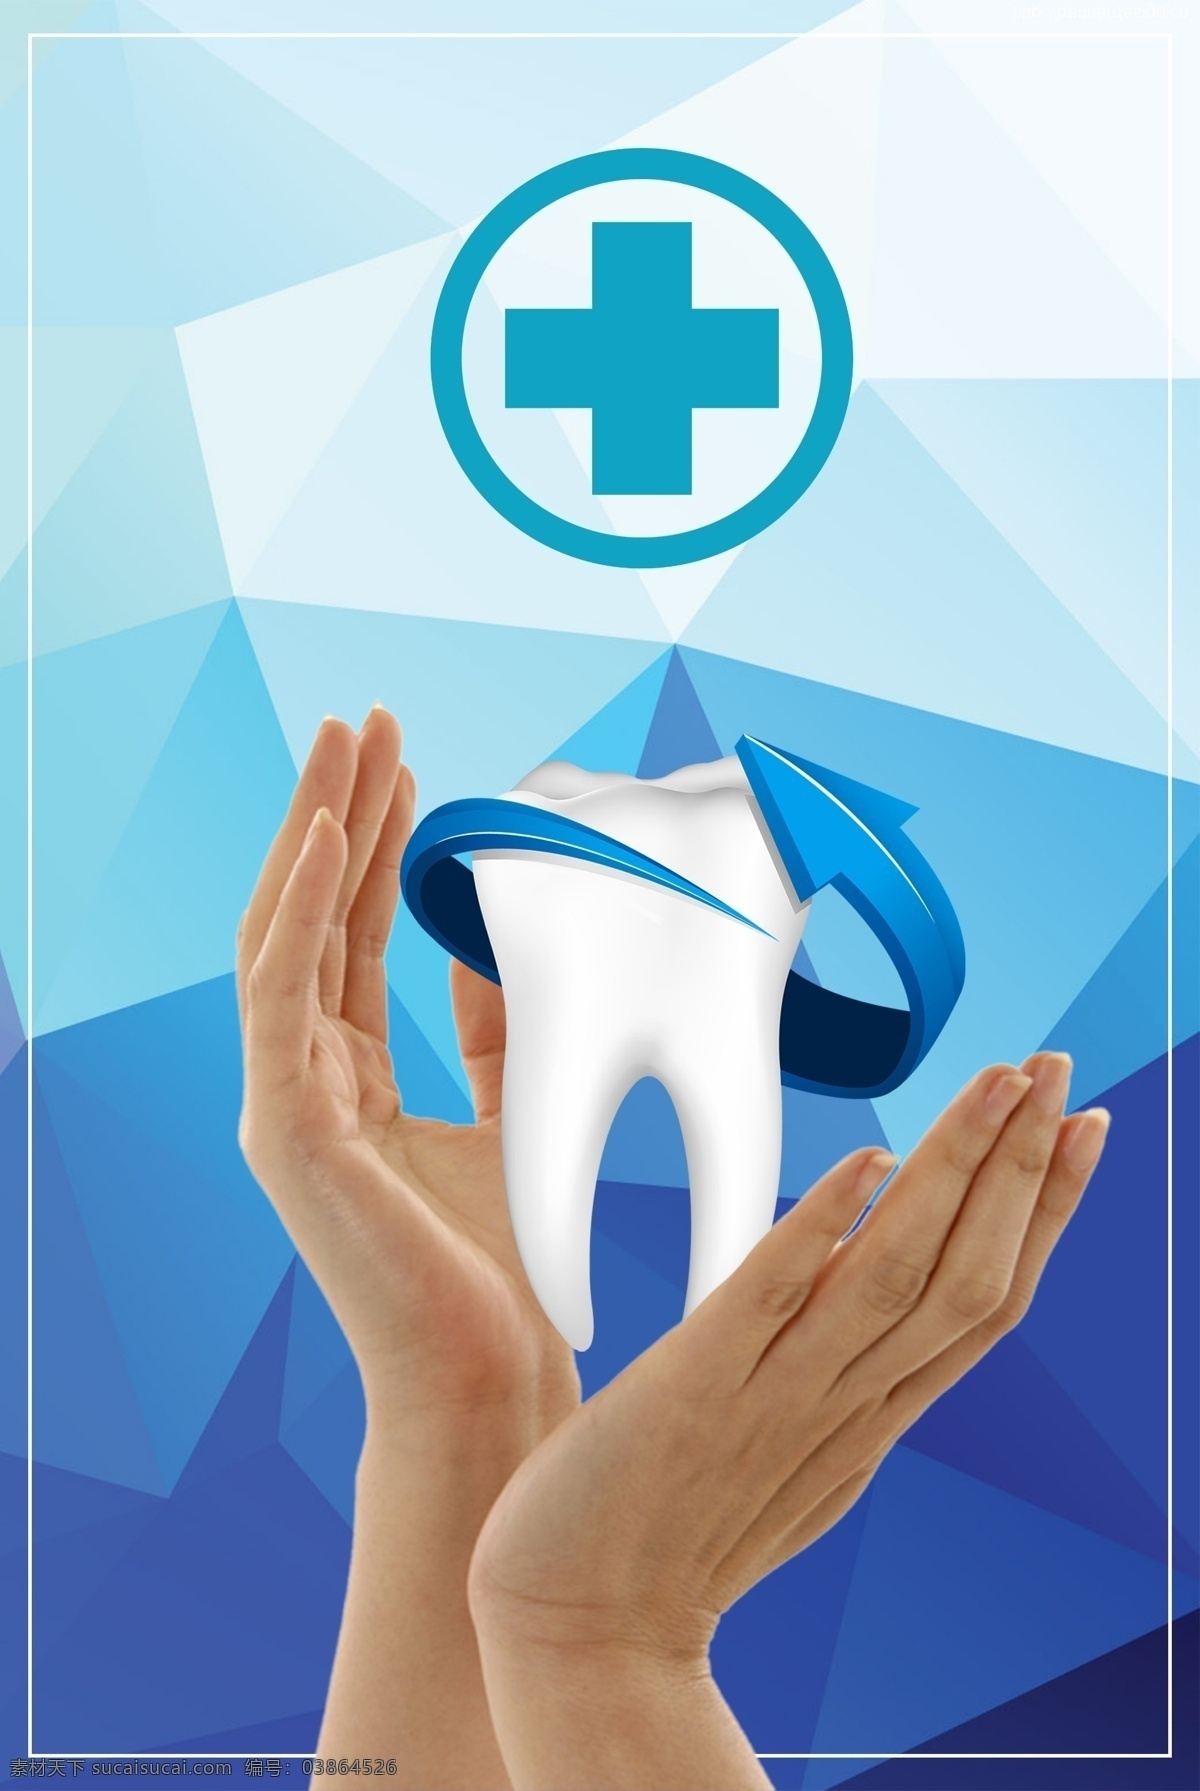 爱 牙 日 宣传海报 背景 爱牙日 牙齿 爱护牙齿 健康 清洁牙齿 海报 广告